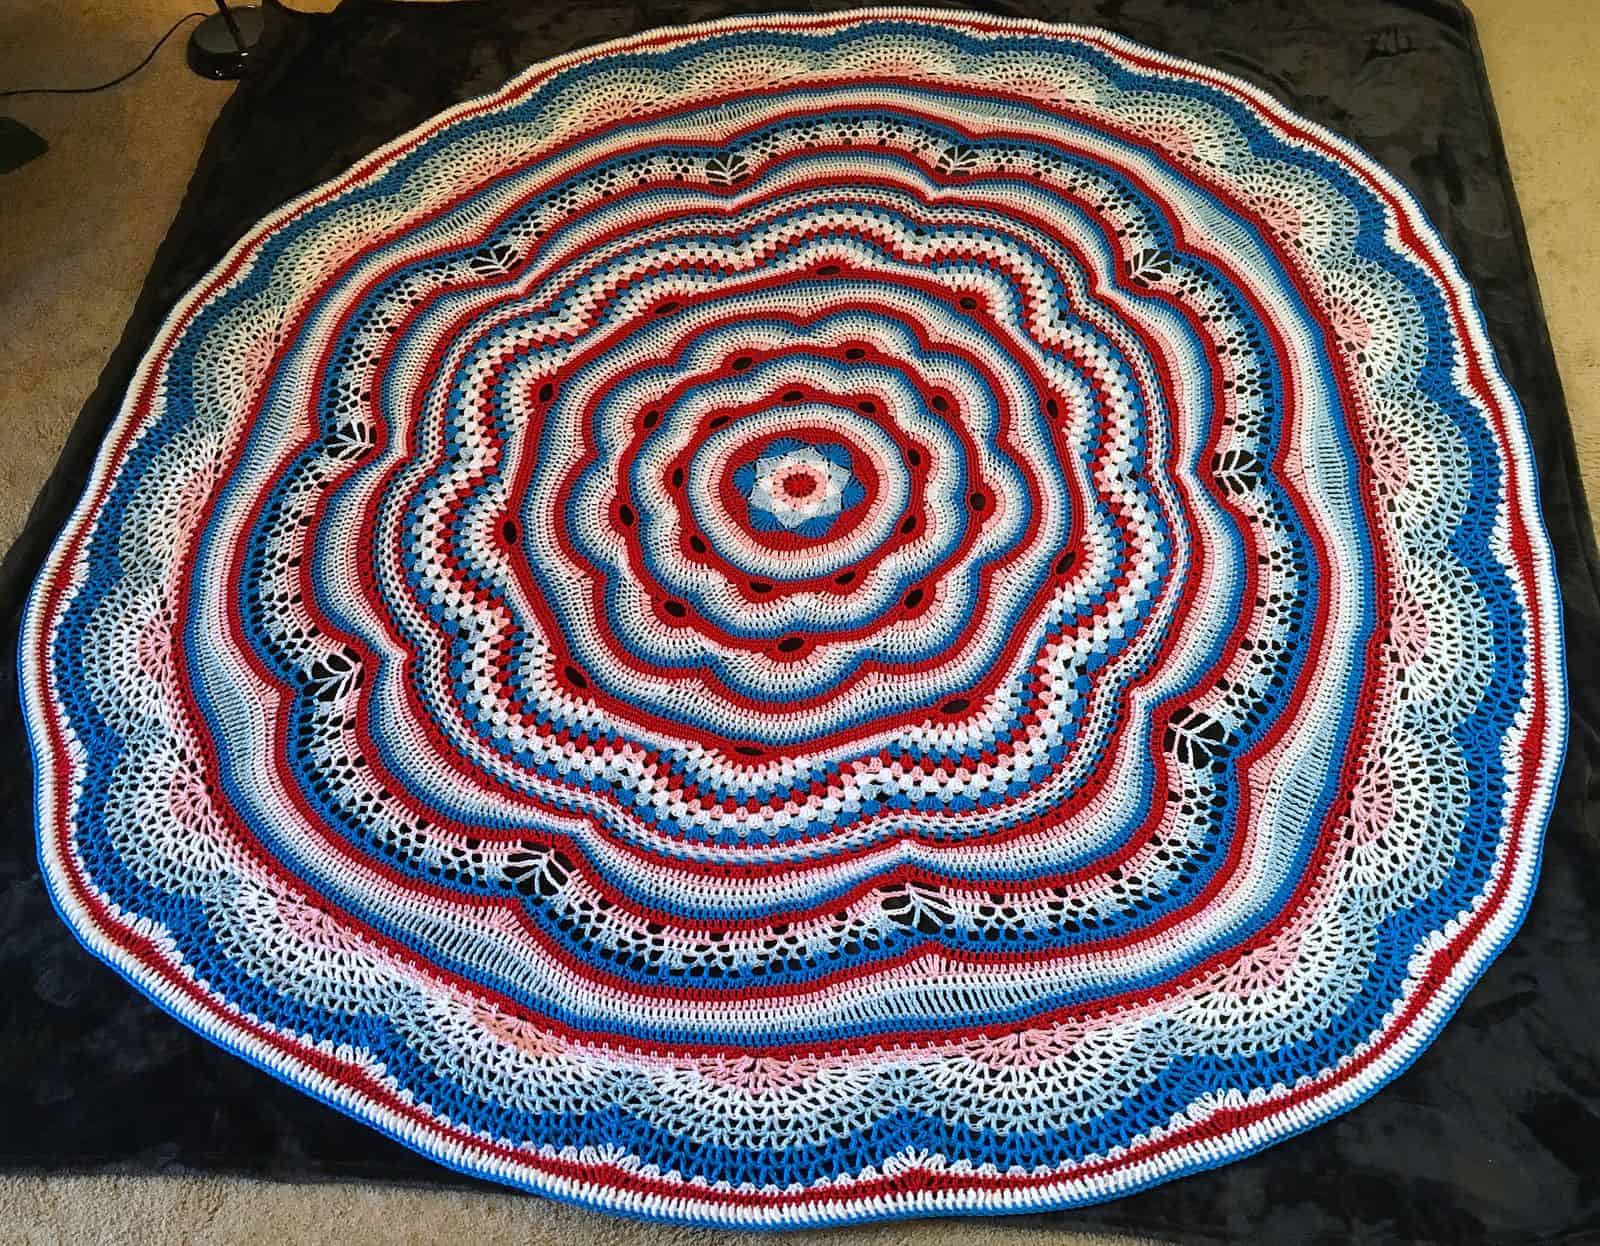 Crochet Mandala Tides of Change